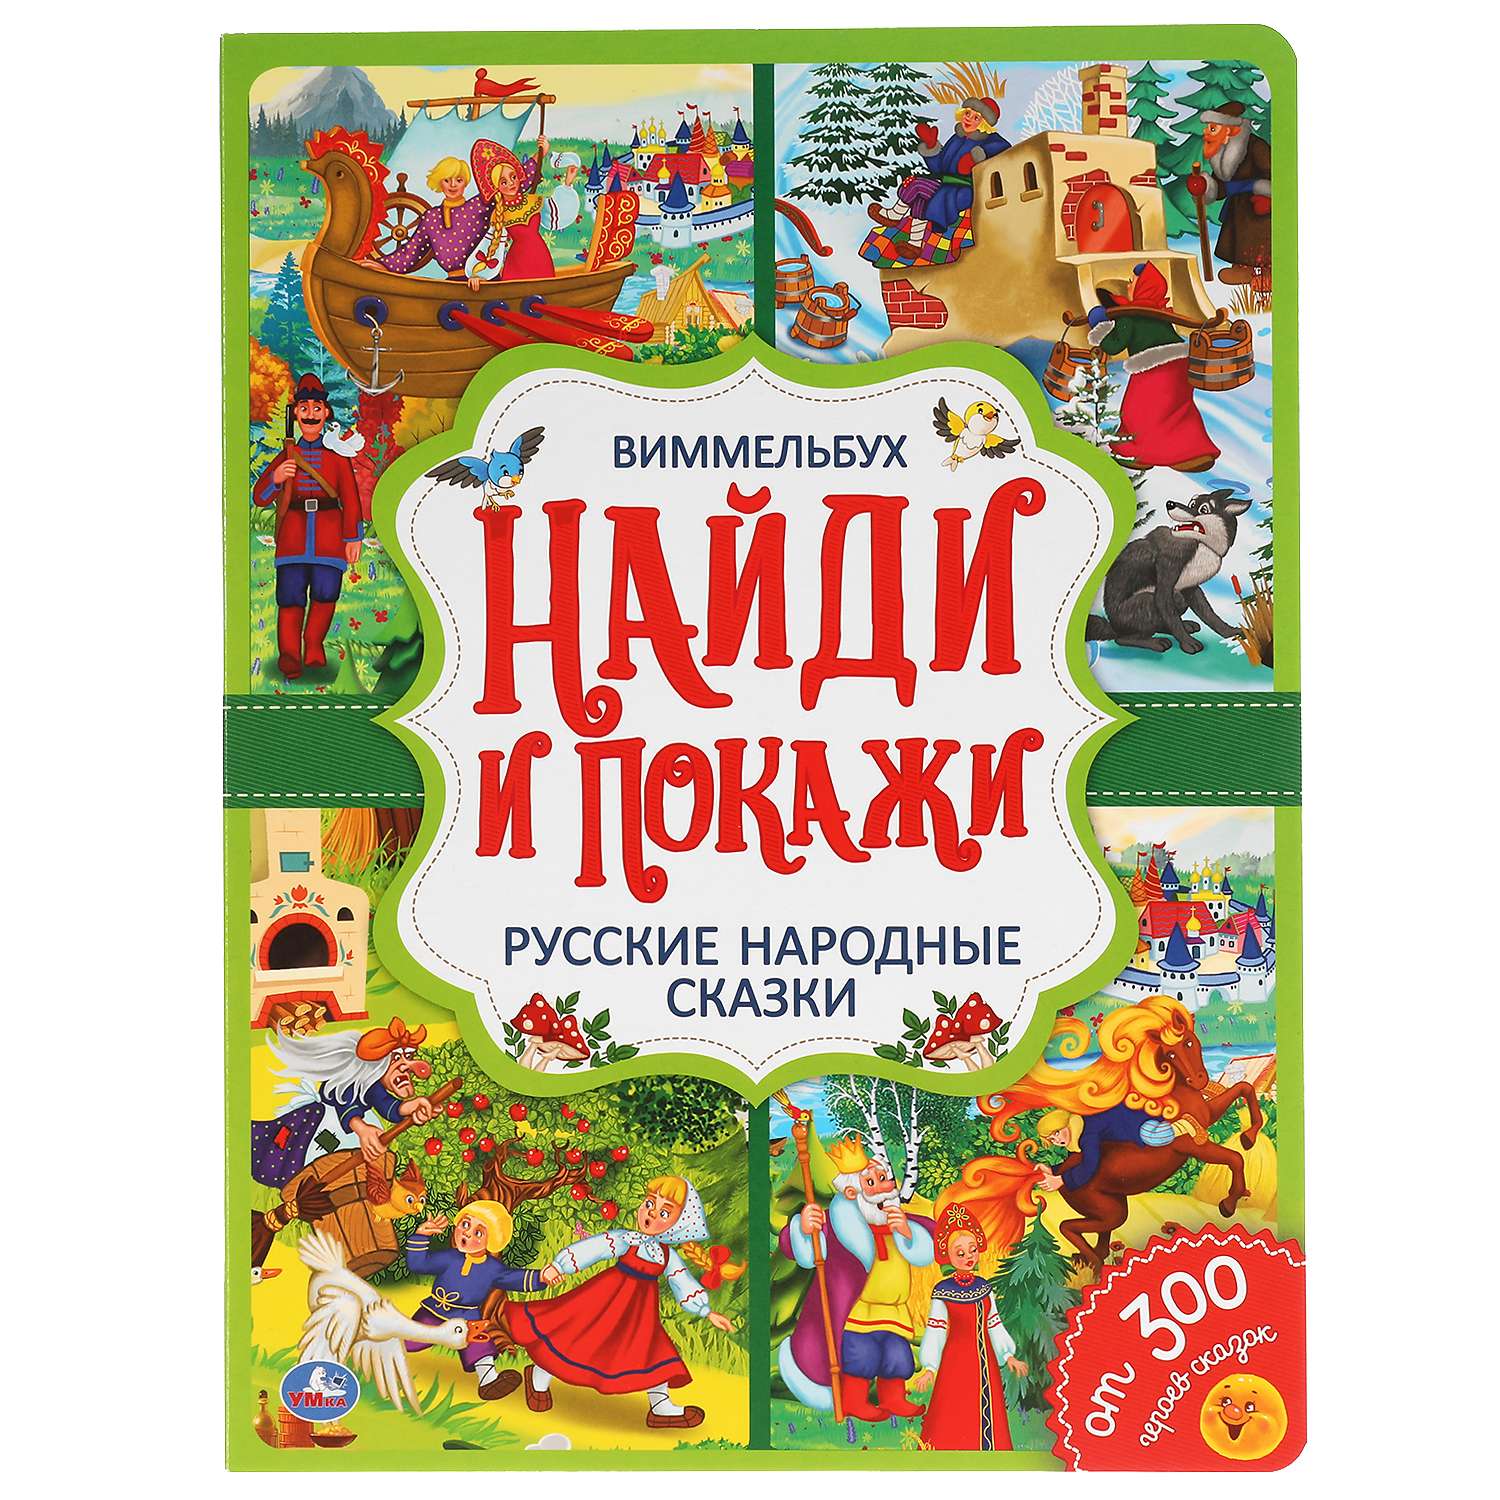 Книга УМка Найди и покажи Русские народные сказки Виммельбух 308381 - фото 1